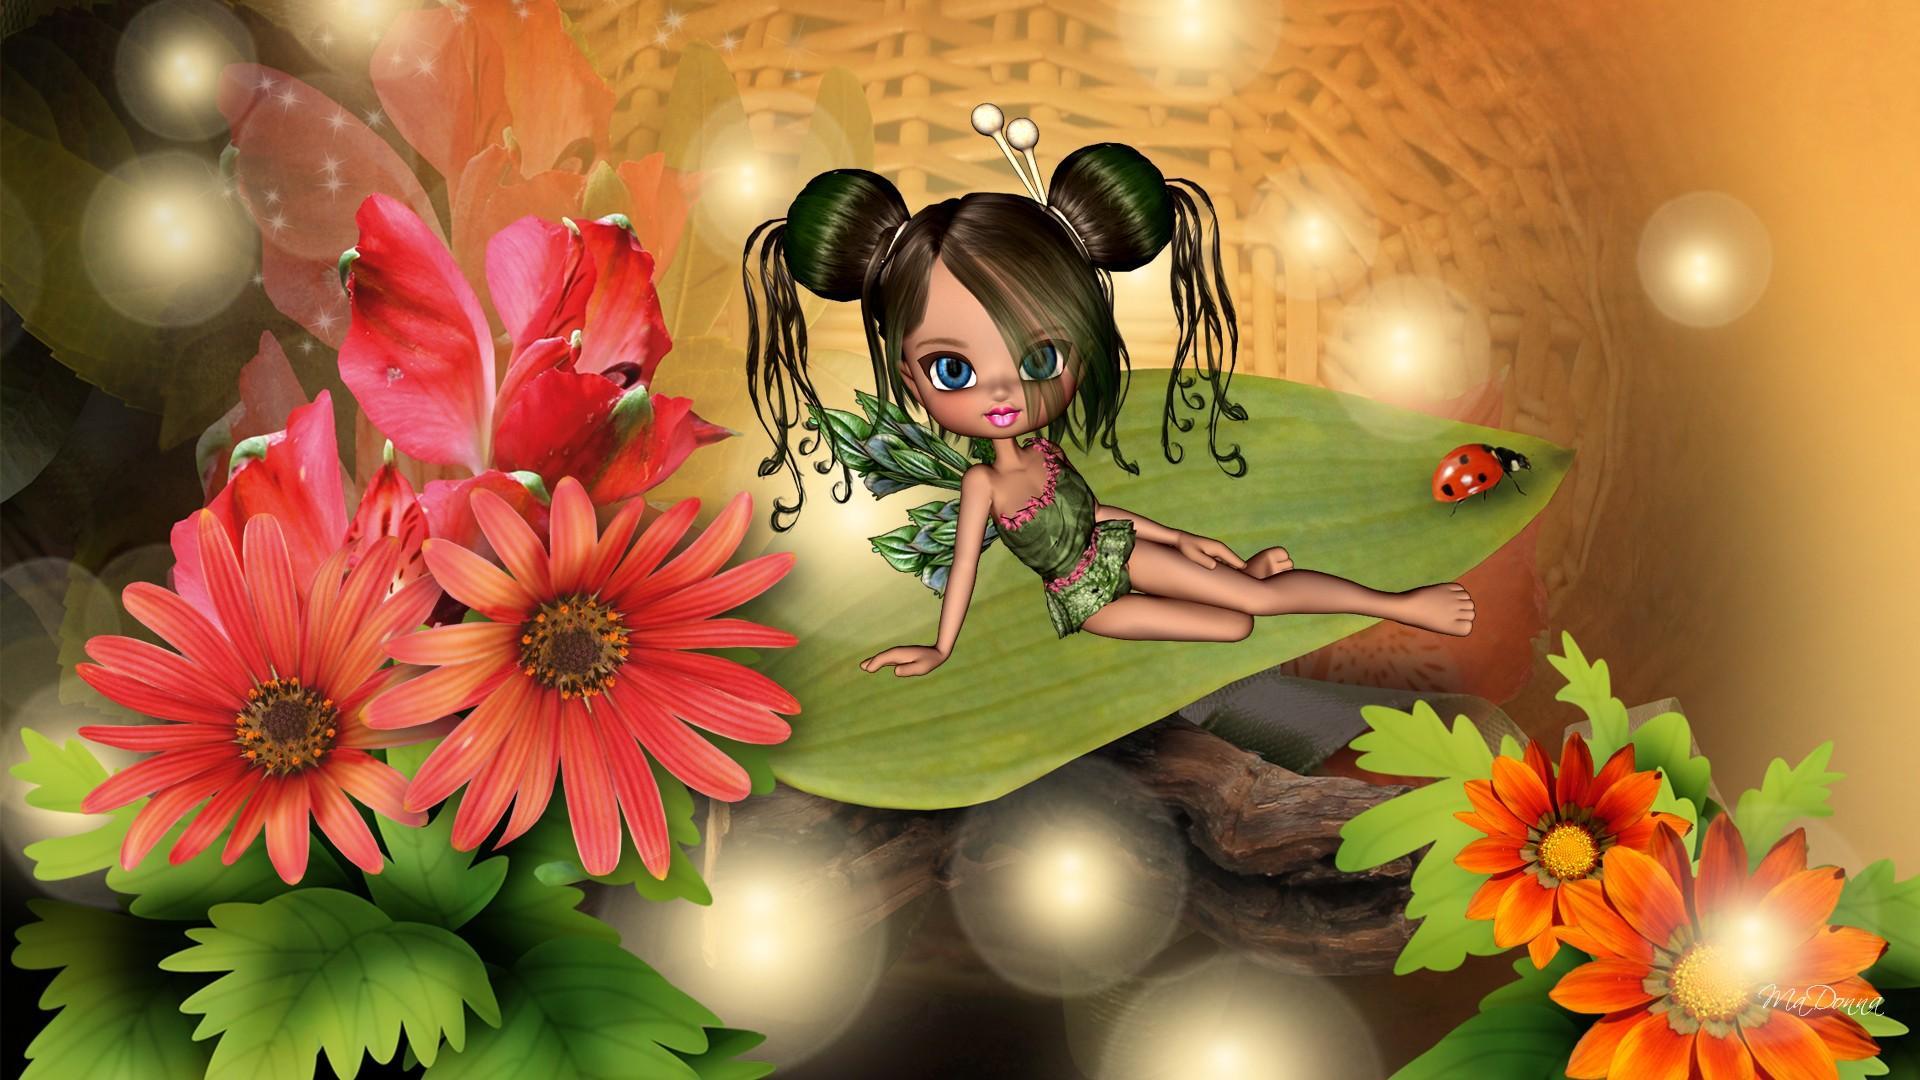 Little Green Fall Fairy HD desktop wallpaper, Widescreen, High